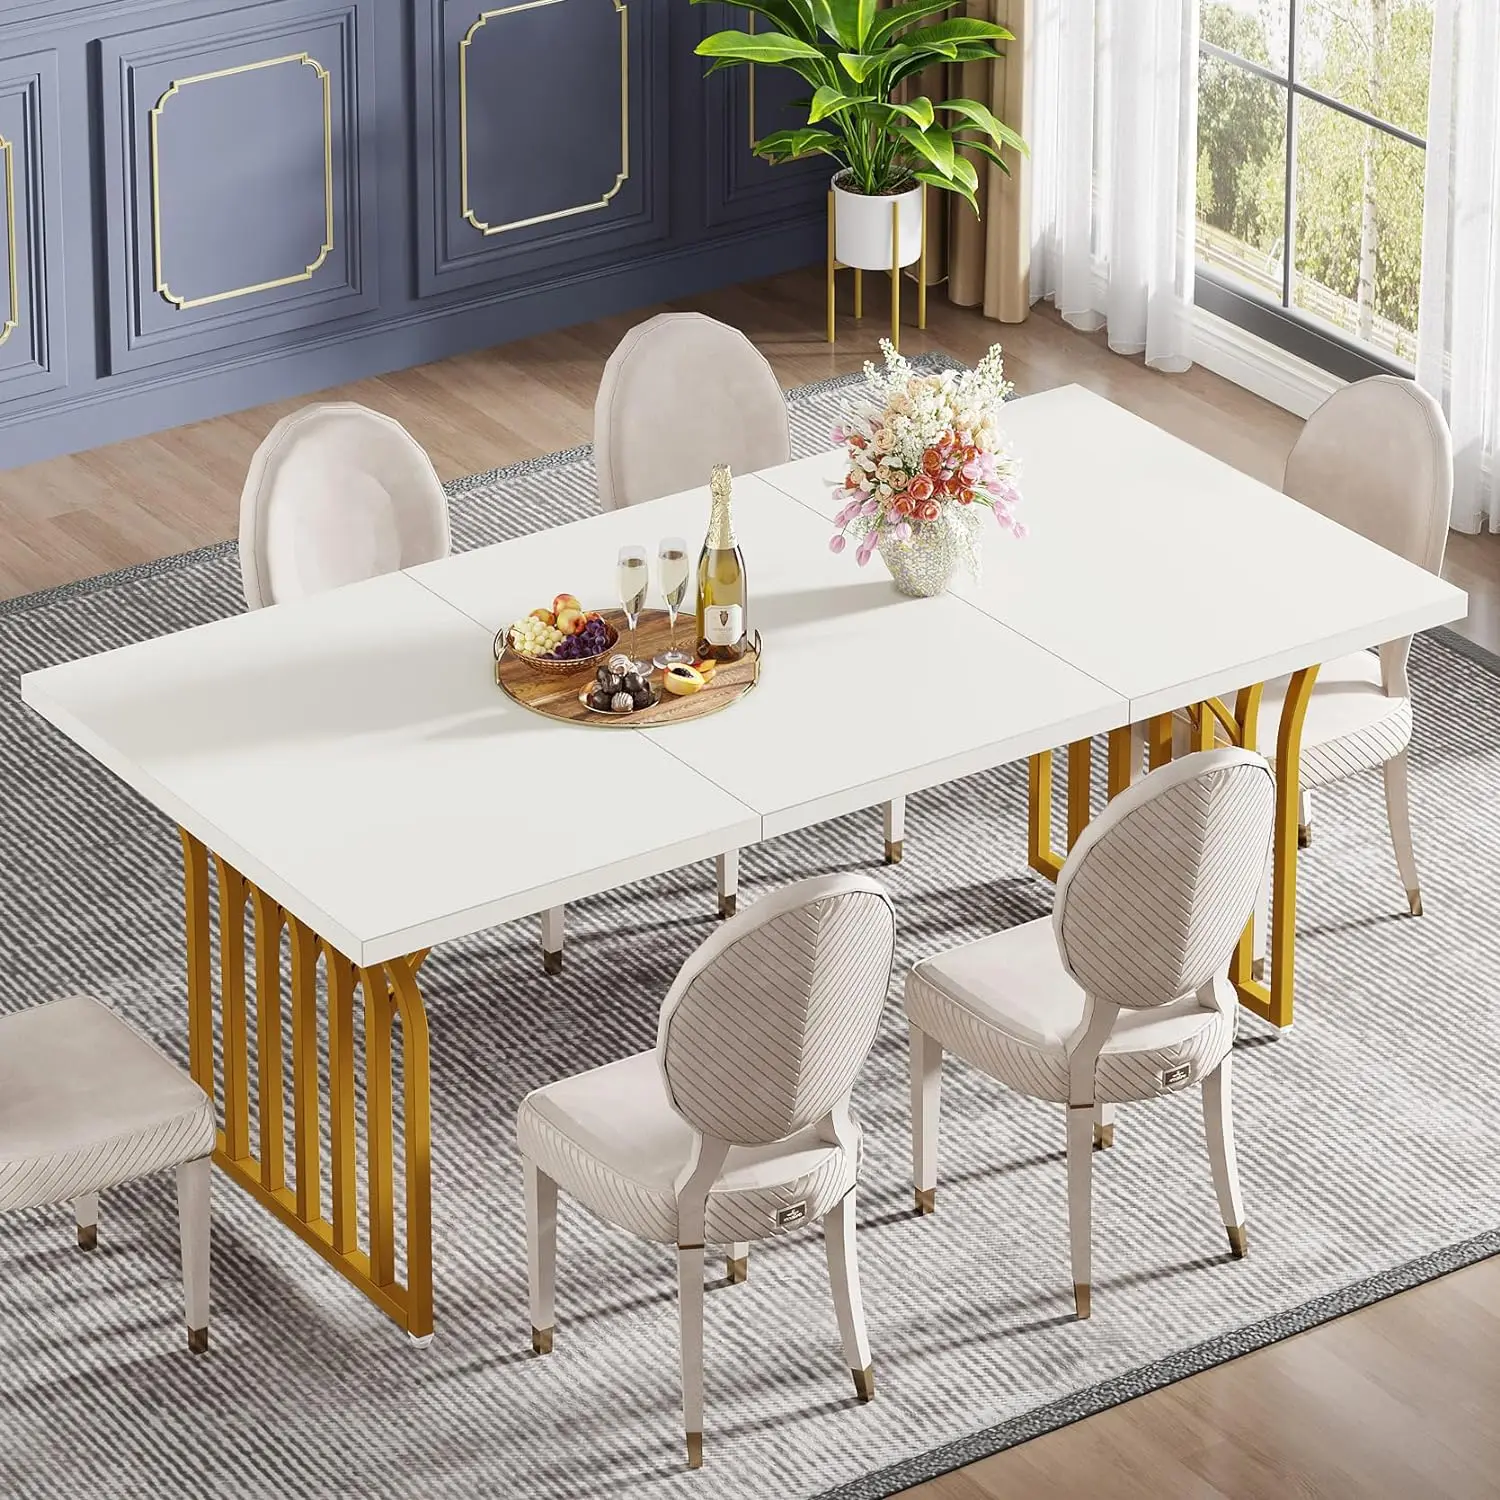 

Современный обеденный стол на 4-6 персон, 63 дюйма прямоугольный кухонный стол с золотой металлической рамой, деревянный обеденный стол, белый и золотой